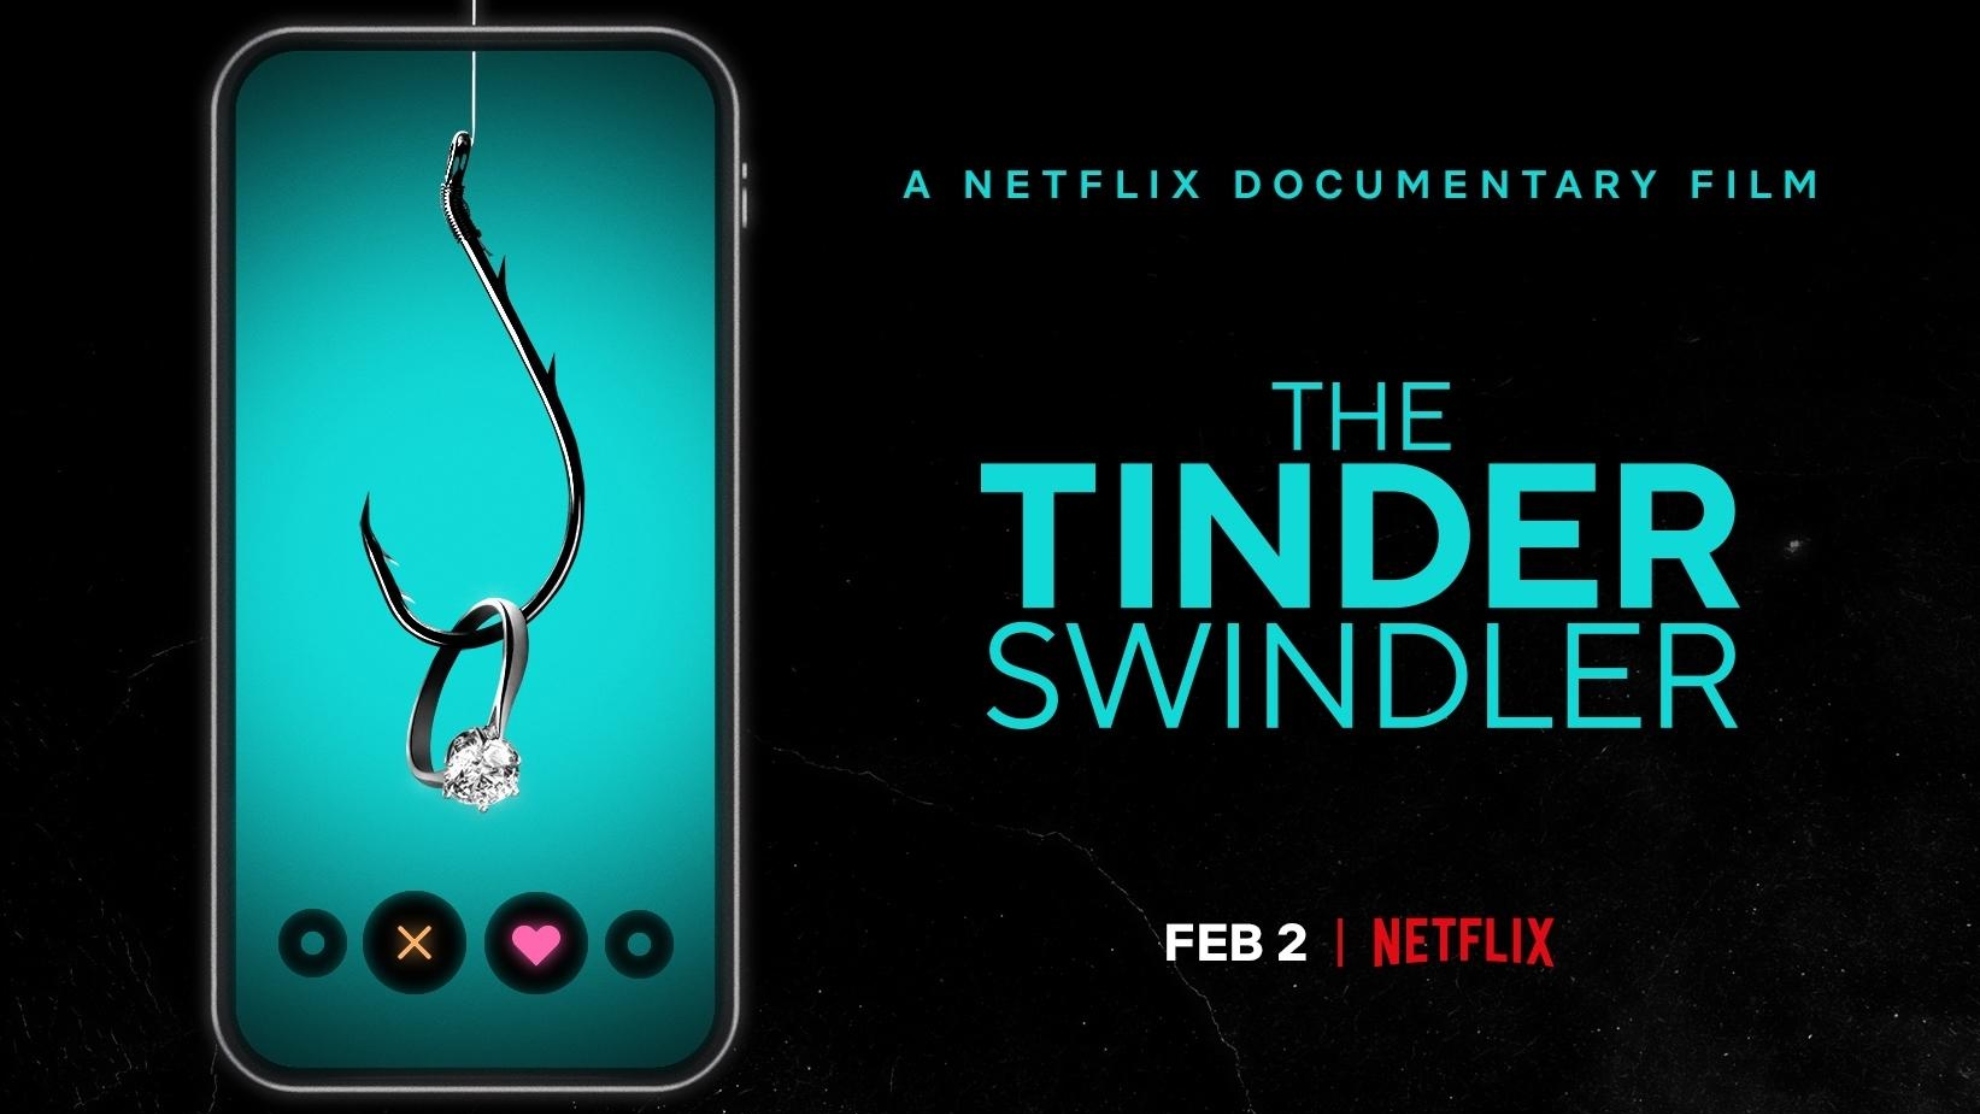 Cast tinder swindler 'The Tinder